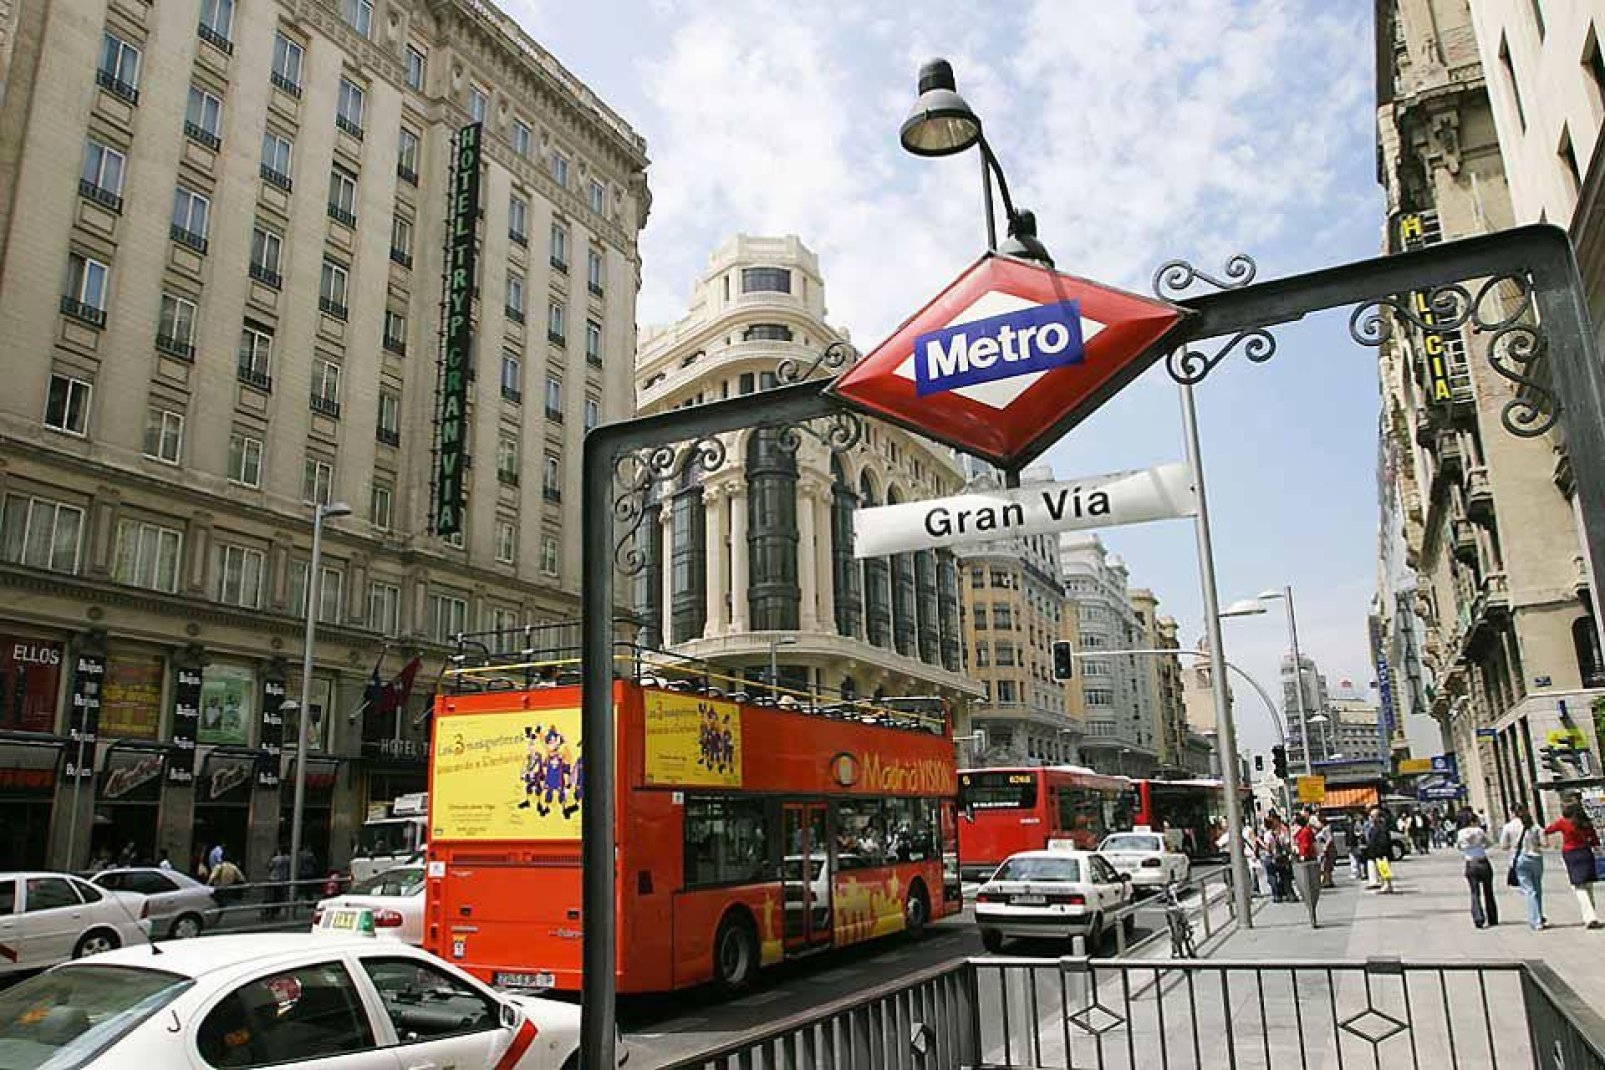 La Gran Vía è il viale principale di Madrid. Lungo questo viale si trovano hotel, cinema, banche e centri commerciali.